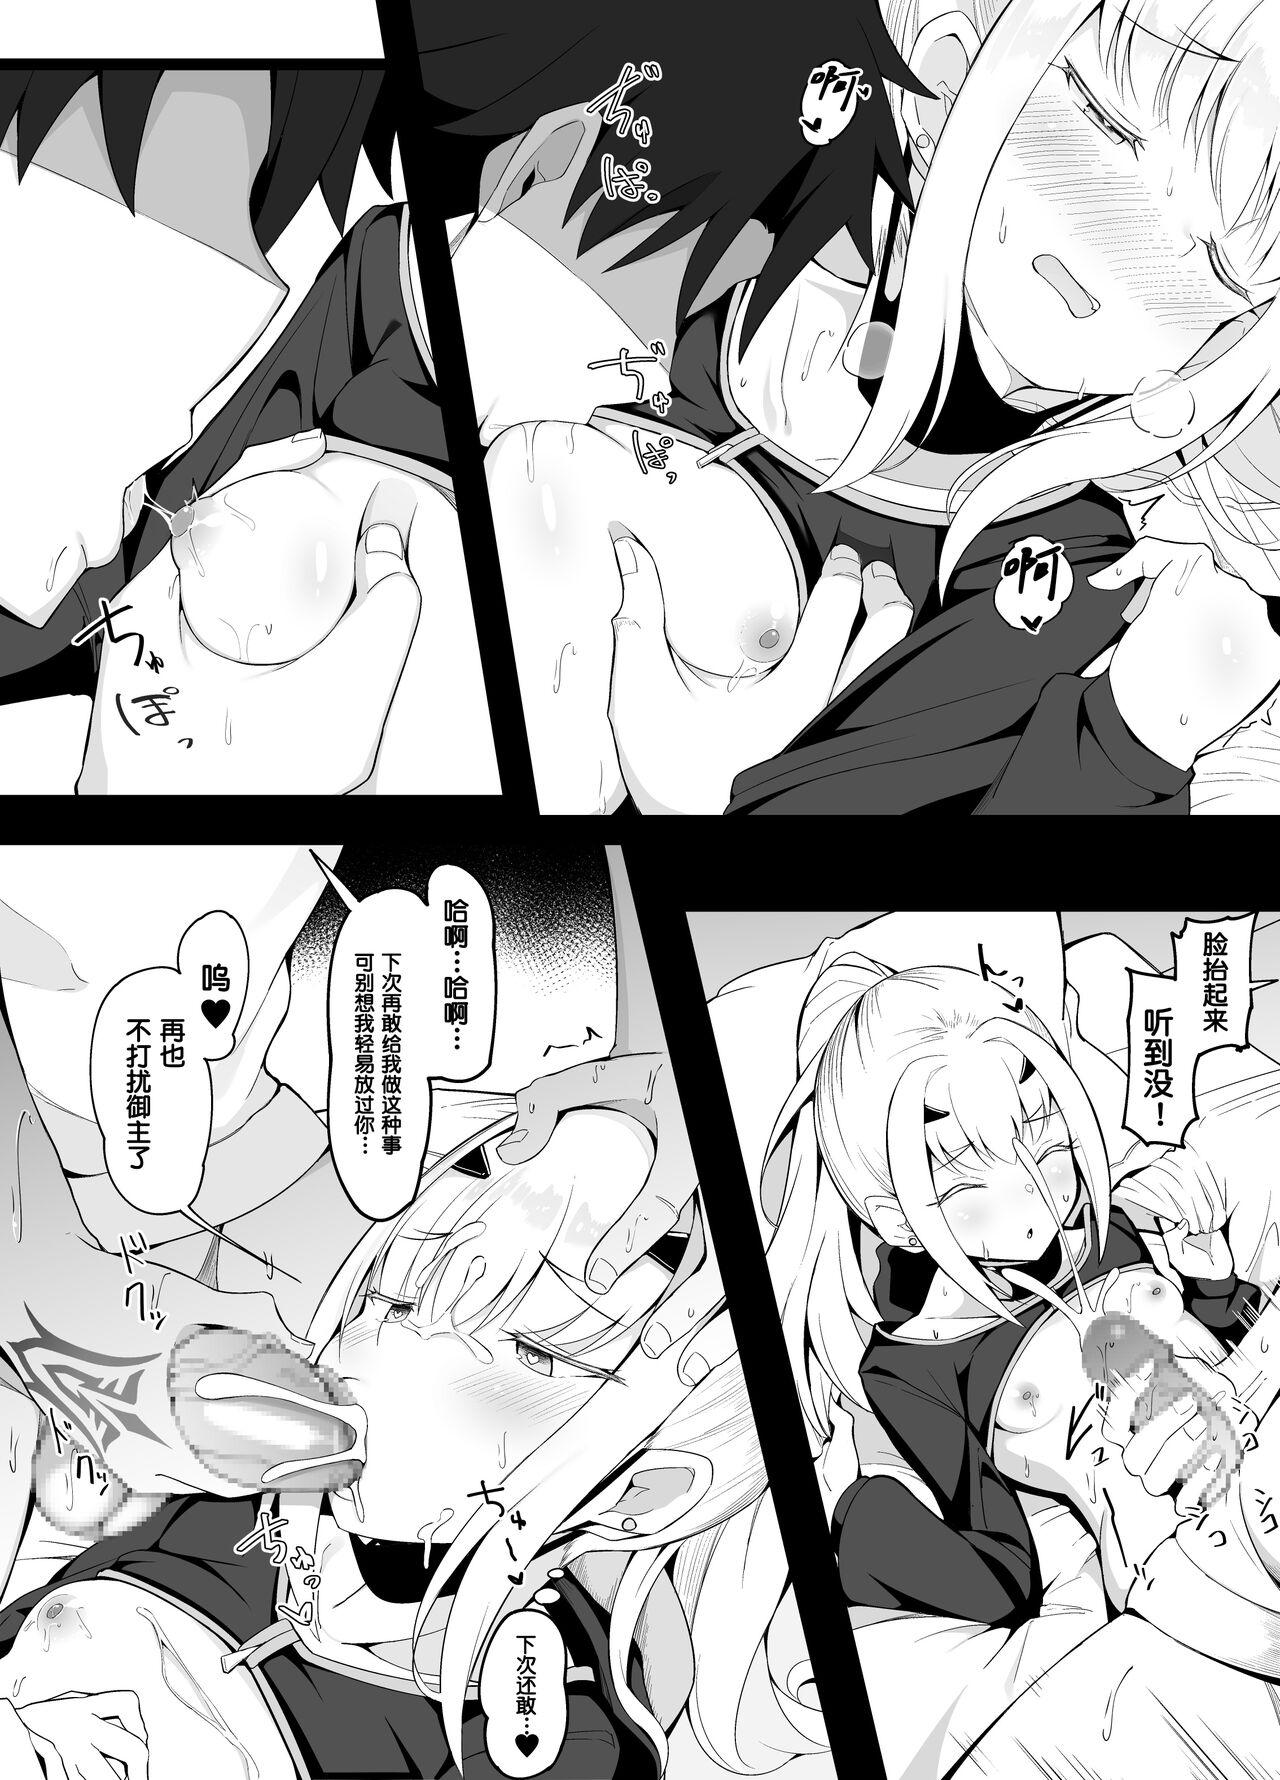 Hot Sluts 8-gatsu Ban Kongetsu no Ero Manga 2 - Fate grand order Gayclips - Page 4